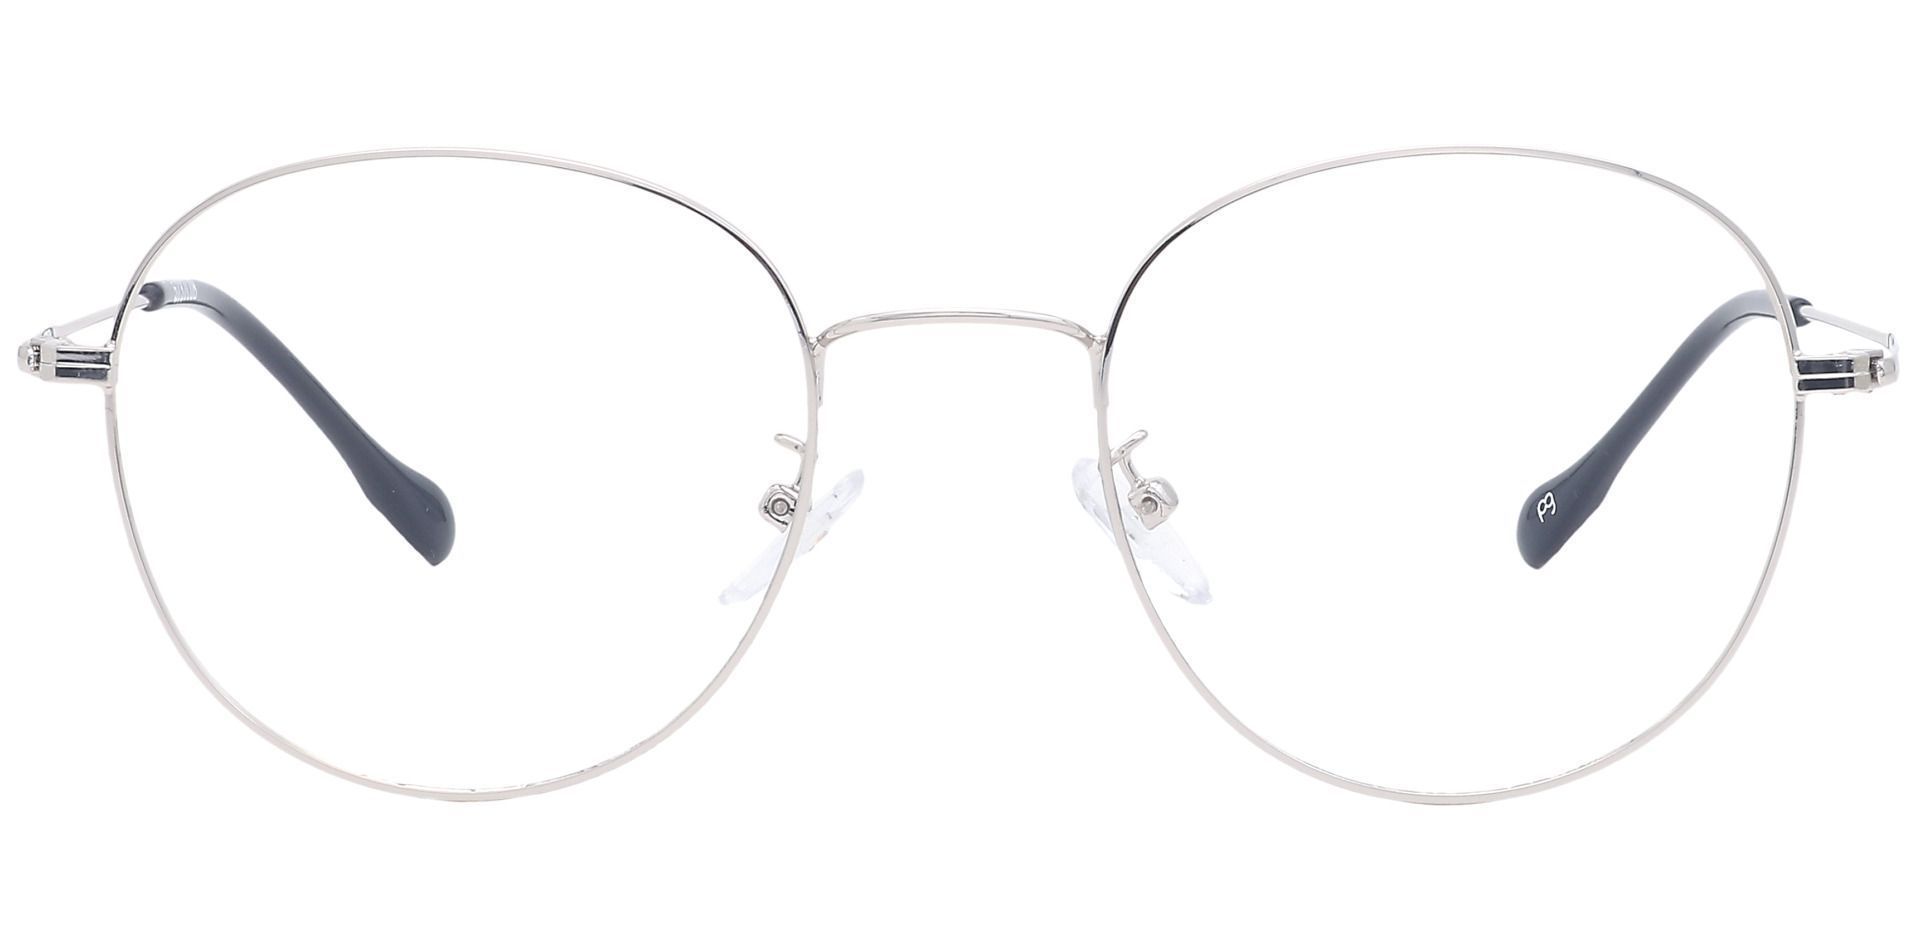 Miller Oval Progressive Glasses - Gray